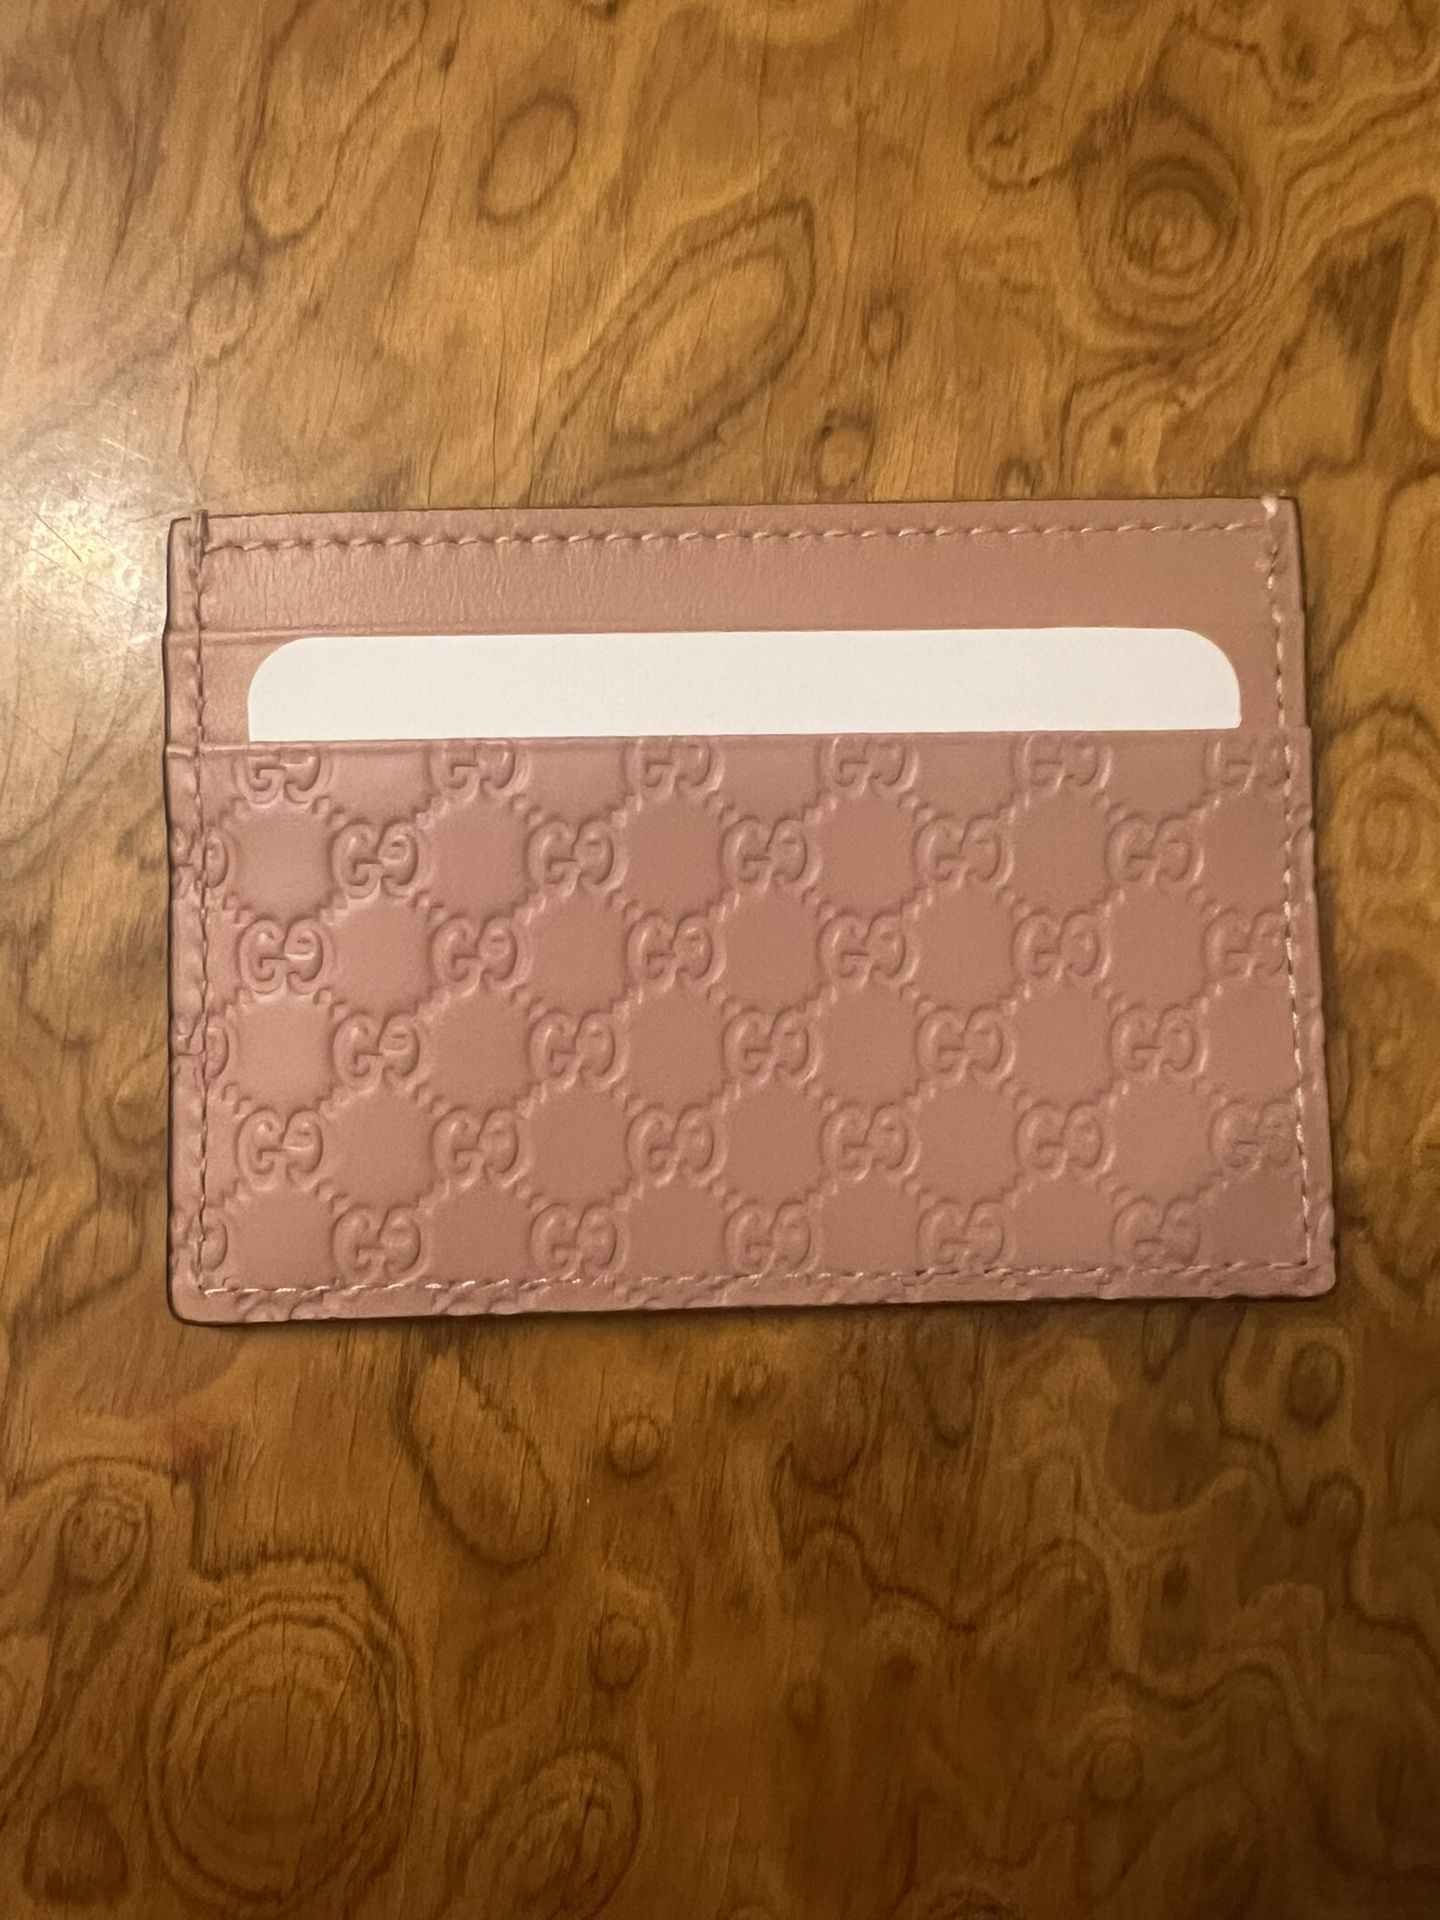 Gucci - MicroGuccissima Card Holder *New*